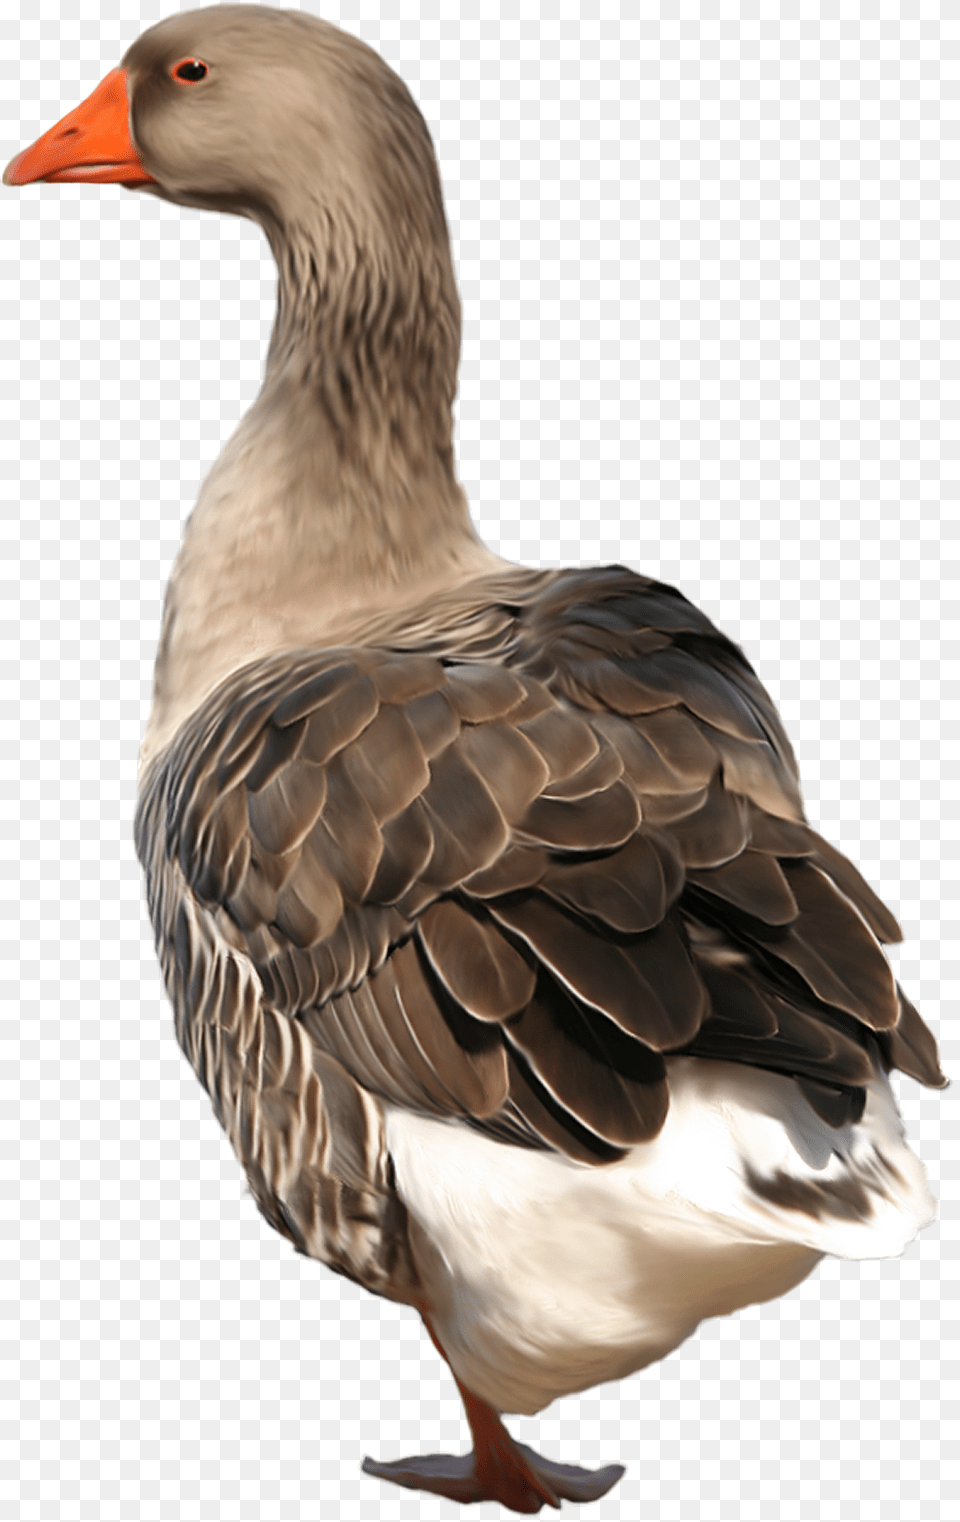 Goose, Animal, Bird, Waterfowl, Anseriformes Free Png